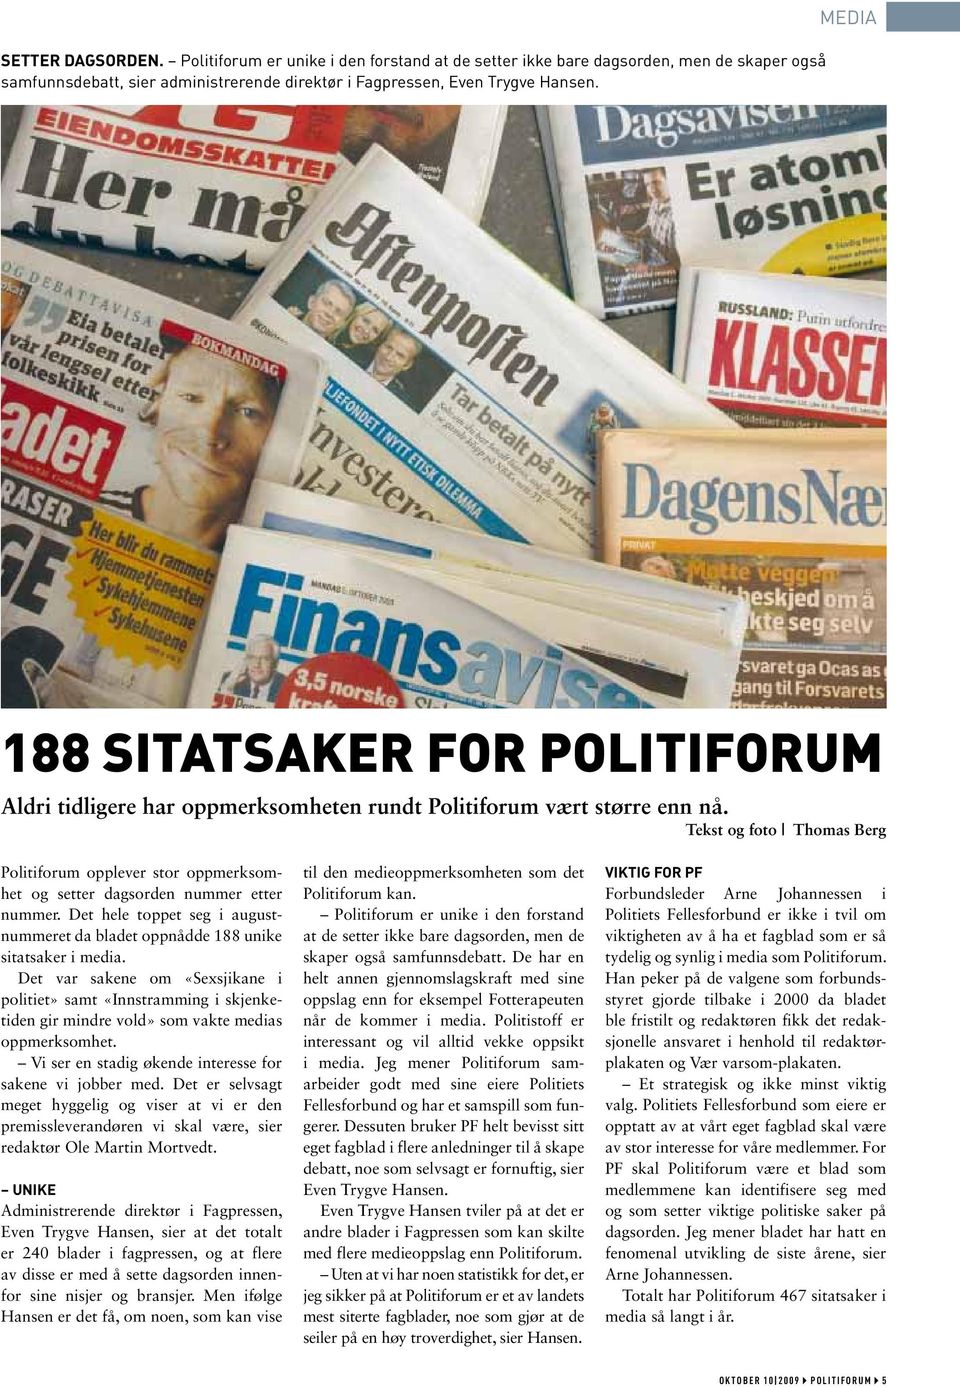 Tekst og foto Thomas Berg Politiforum opplever stor oppmerksomhet og setter dagsorden nummer etter nummer. Det hele toppet seg i augustnummeret da bladet oppnådde 188 unike sitatsaker i media.